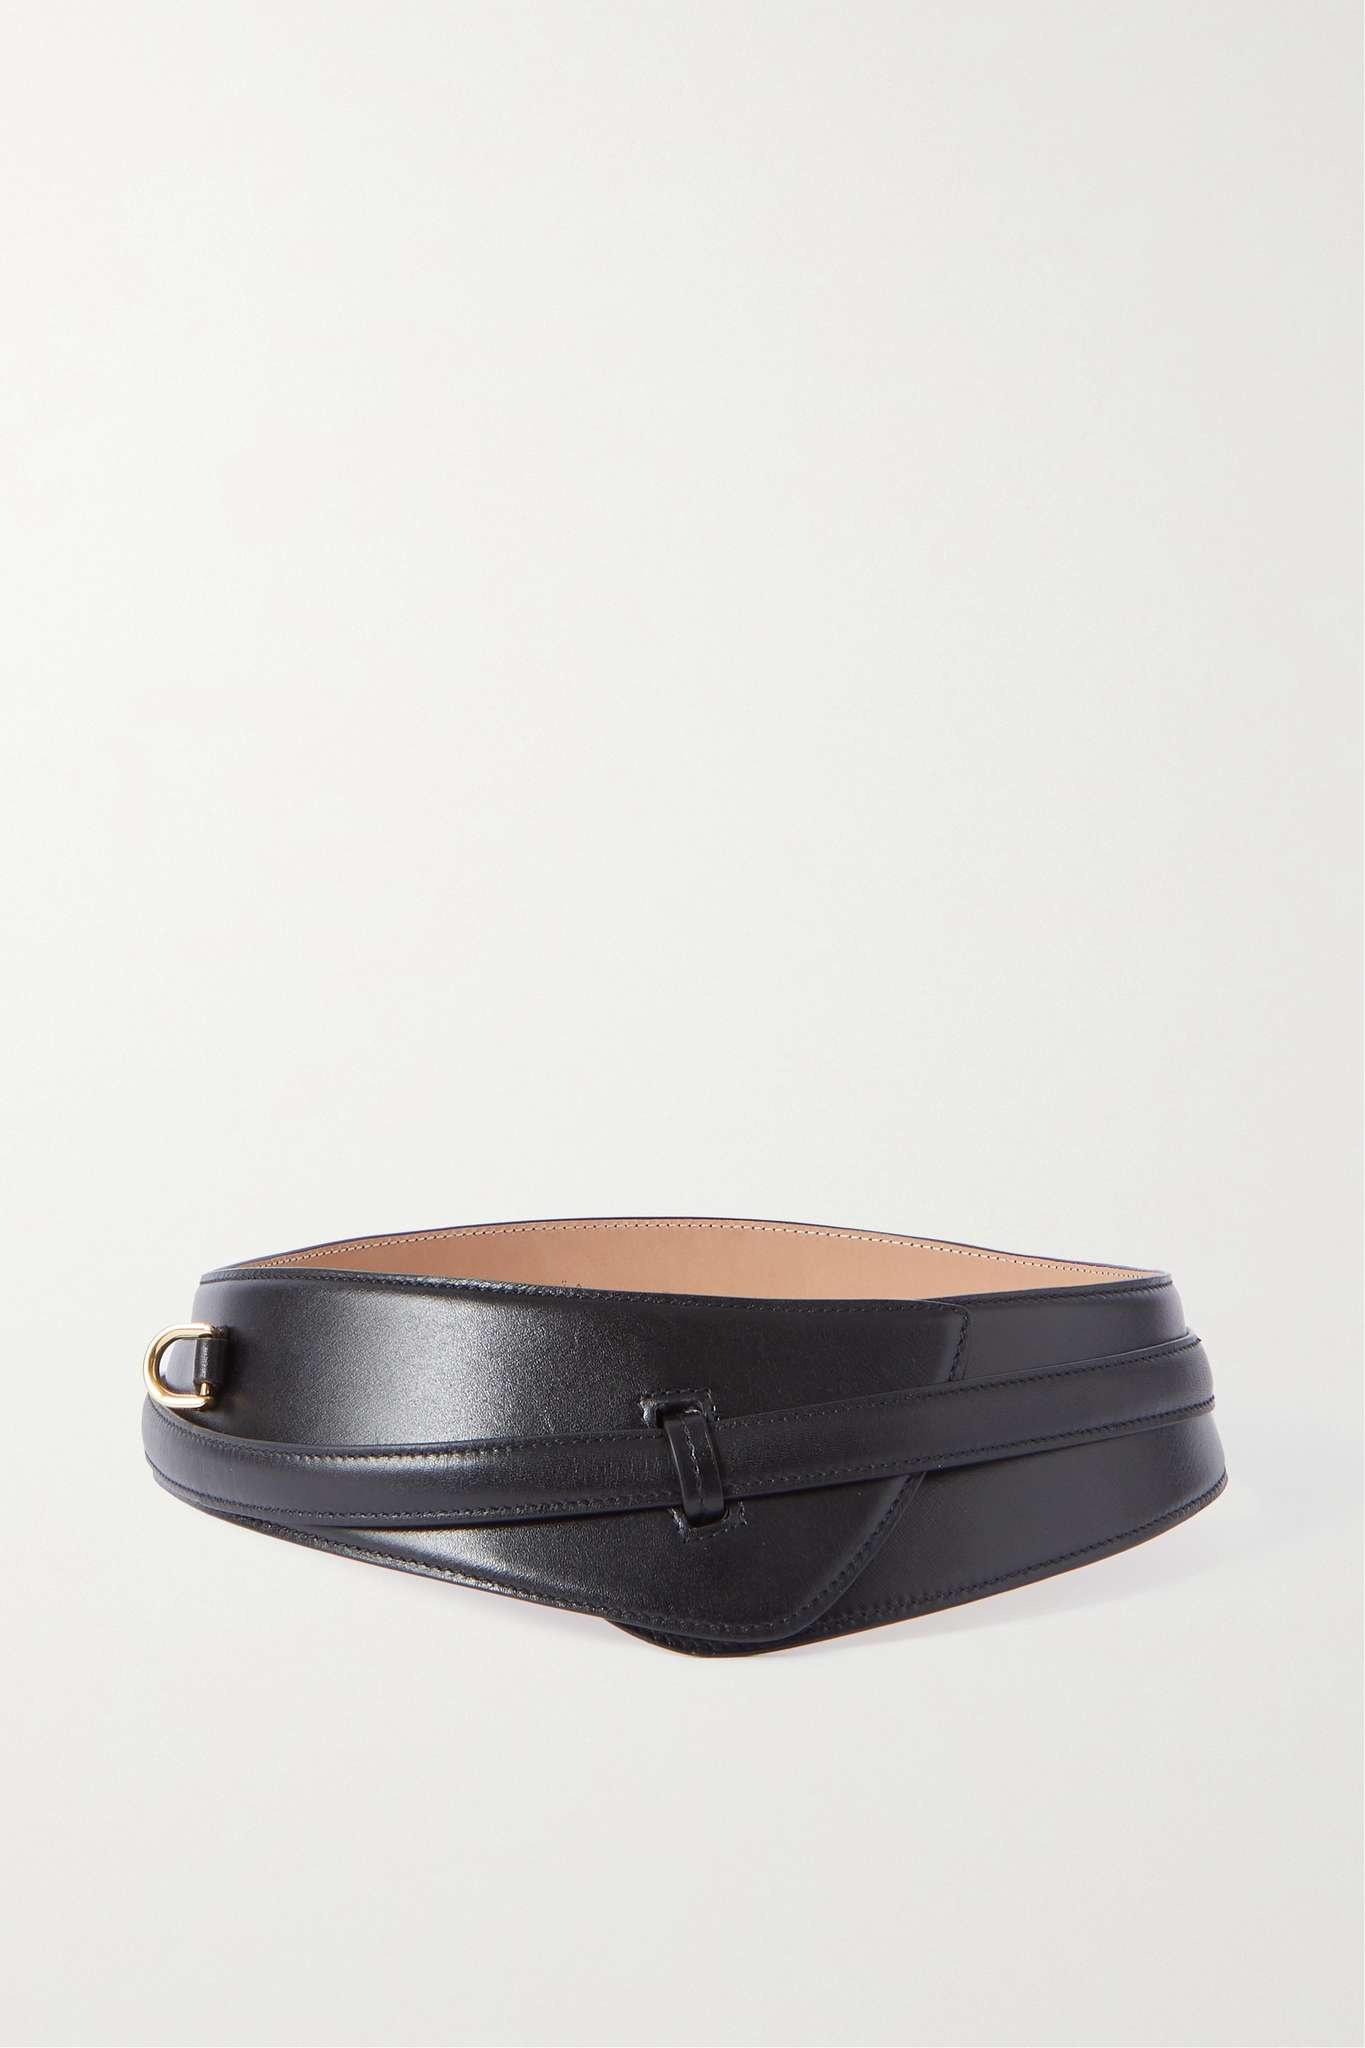 Paneled leather belt - 1